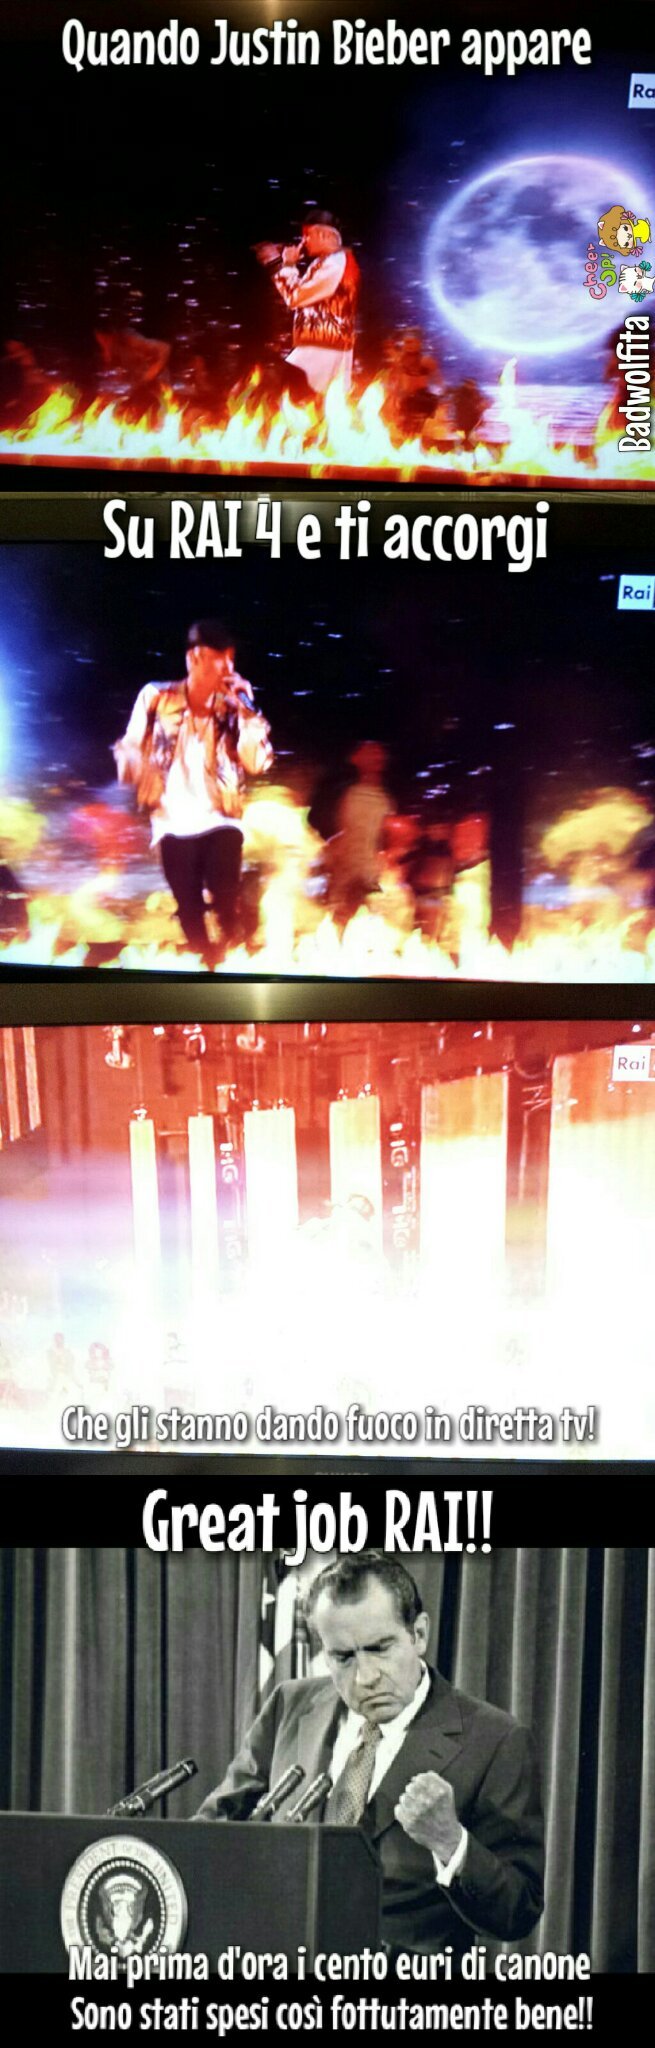 Justin Bieber bruciato al rogo in diretta tv - meme